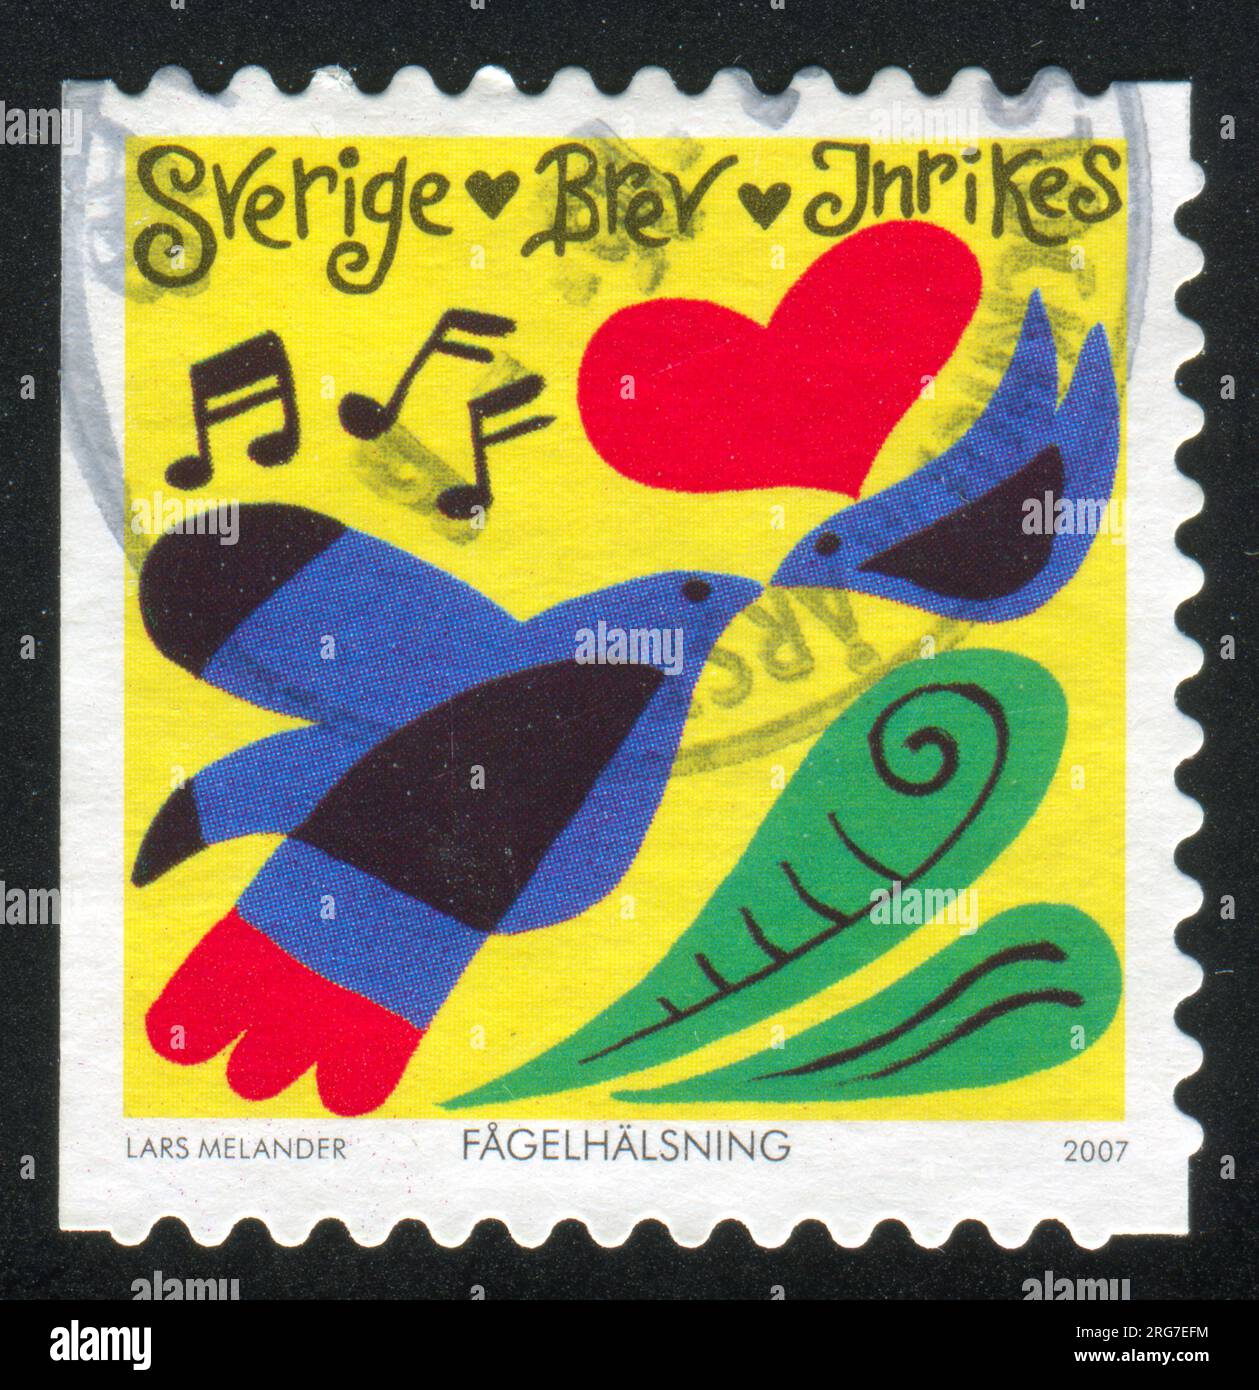 RUSSIE KALININGRAD, 14 SEPTEMBRE 2013 : timbre imprimé par la Suède, montrant oiseaux, coeur, notes de musique, vers 2007 Banque D'Images